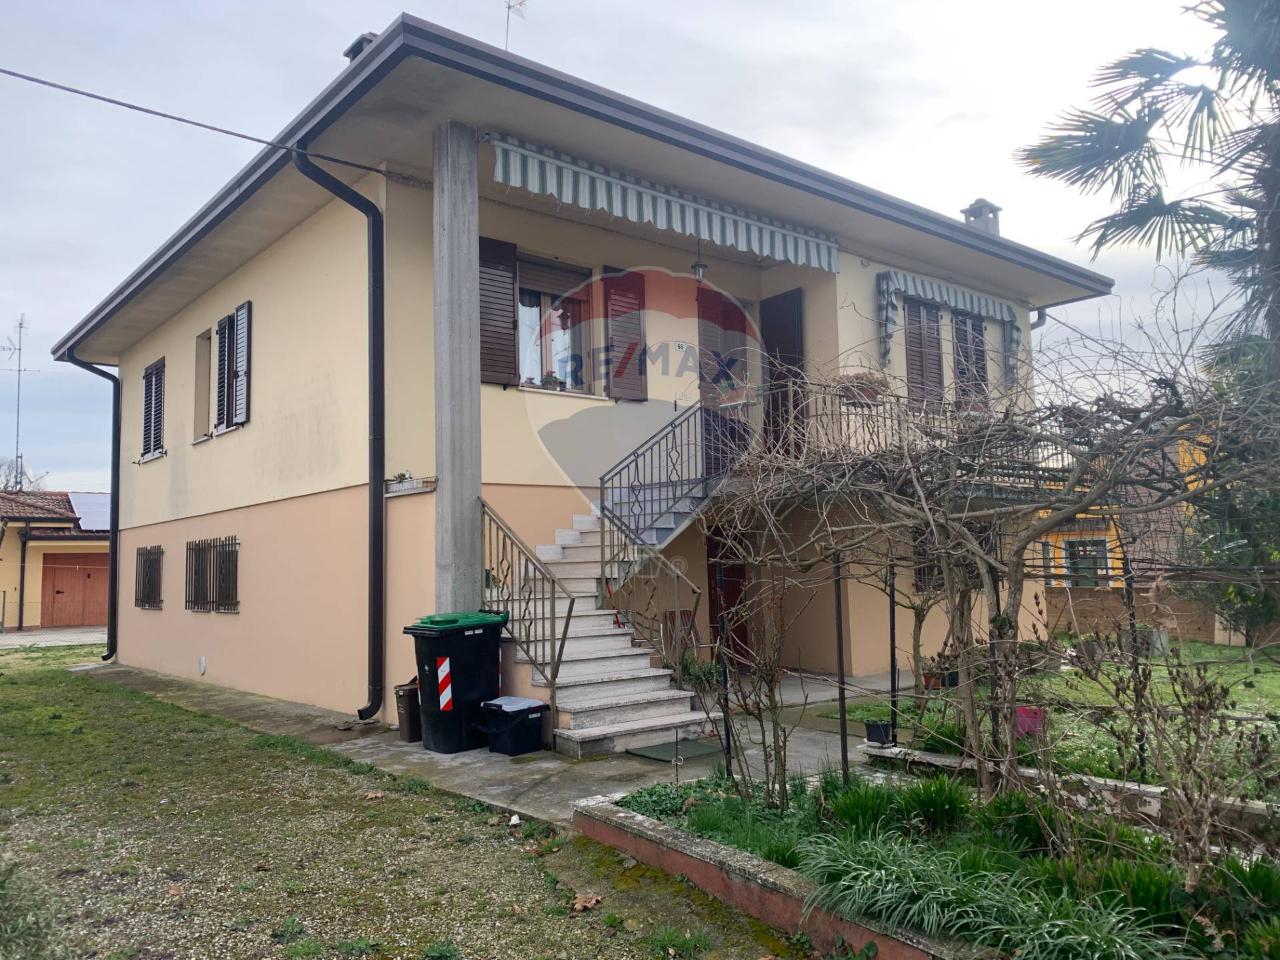 Casa indipendente in vendita a Portomaggiore